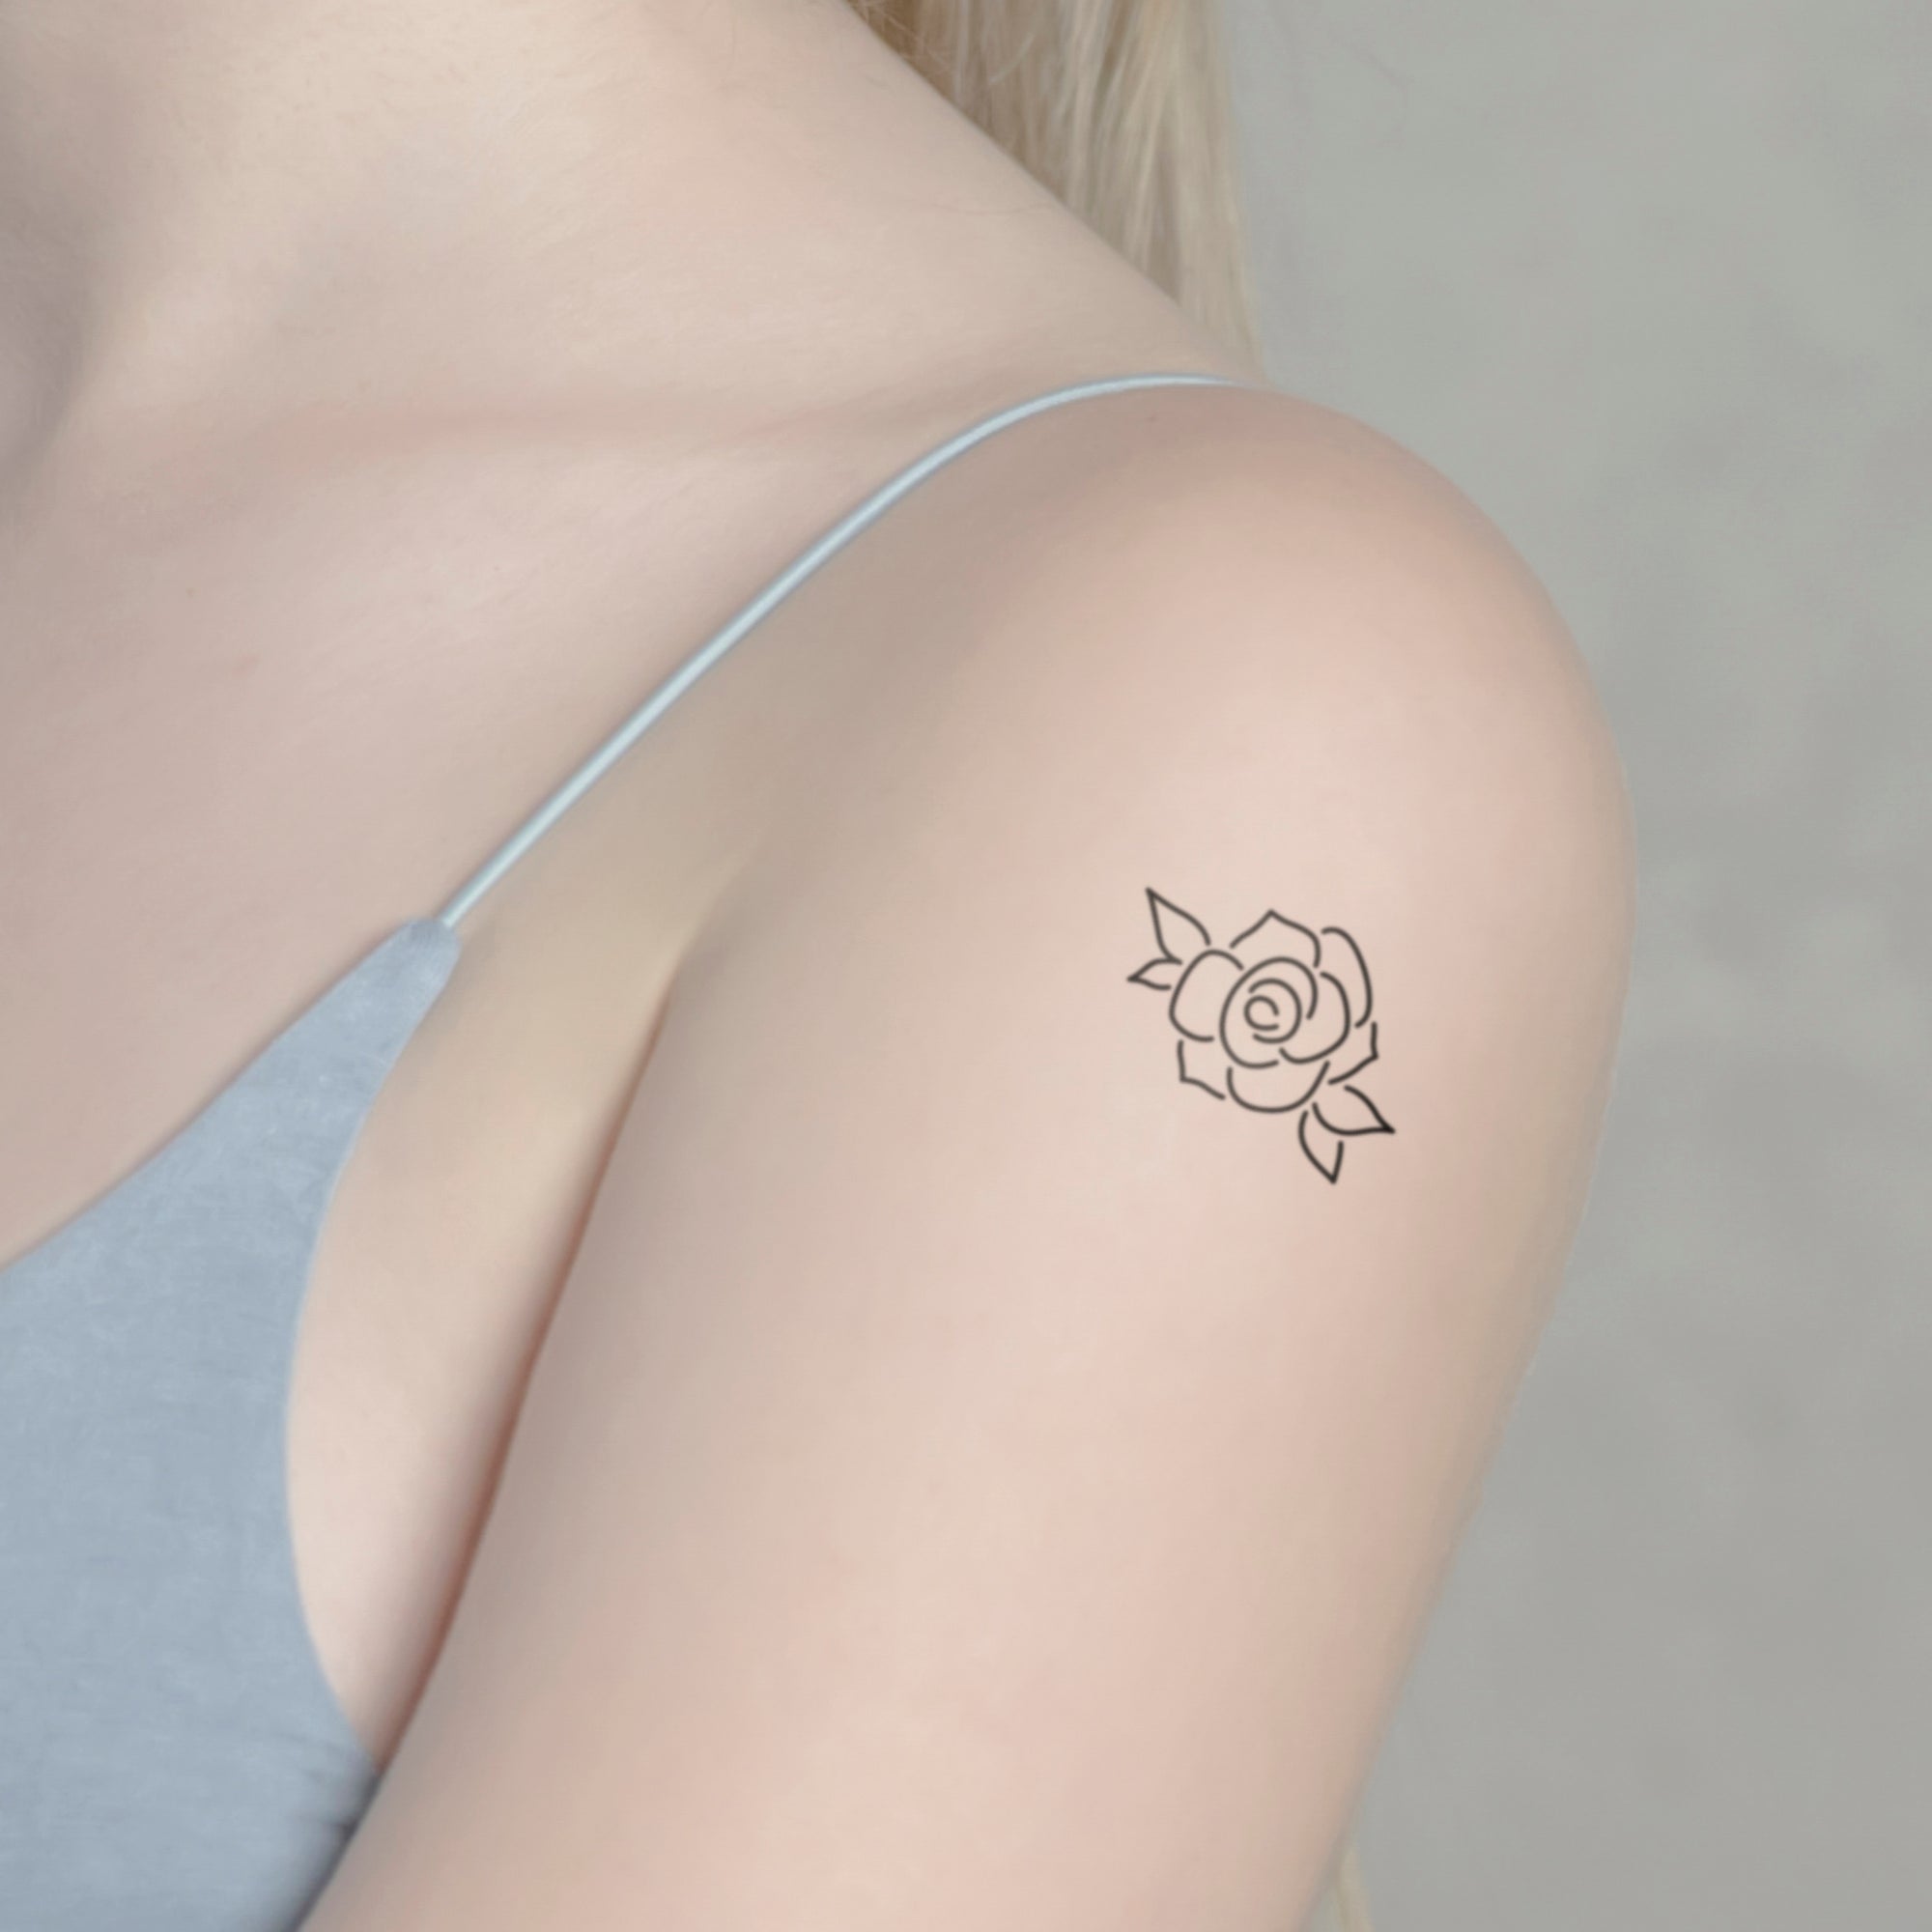 Rosenblüte Tattoo von minink, der Marke für temporäre Tattoos.